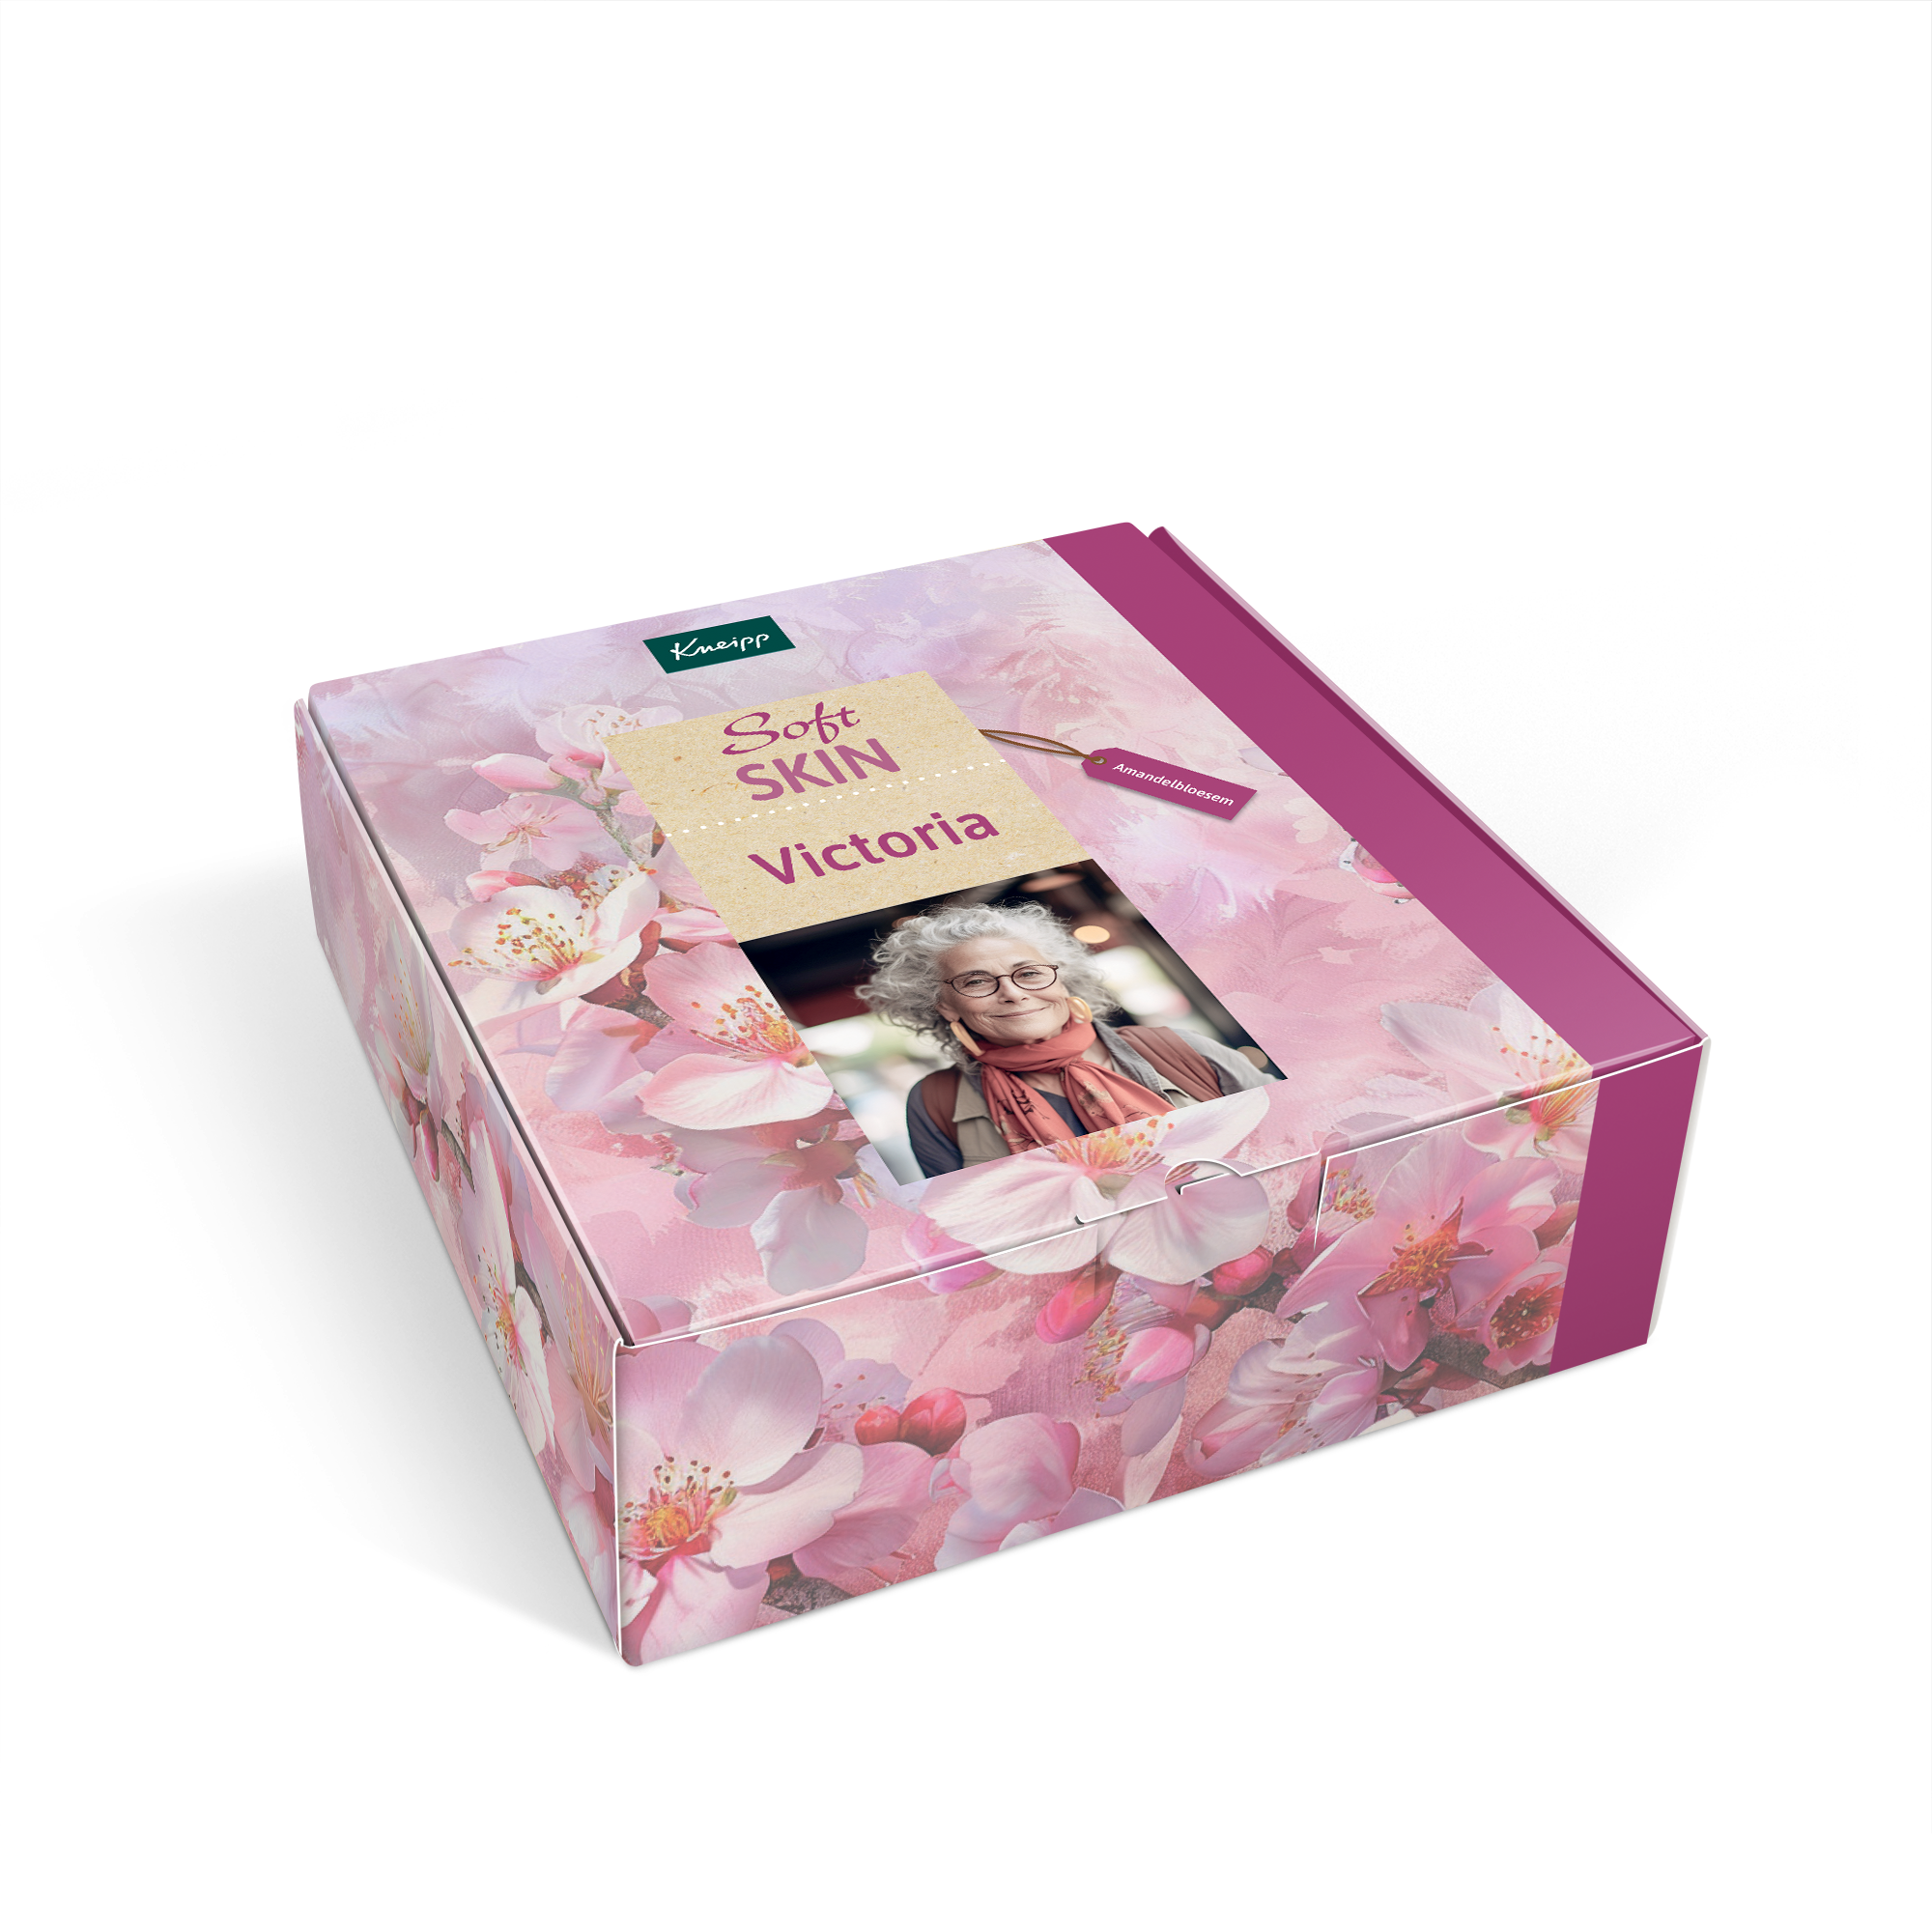 Personlig Kneipp Soft Skin gavesett til kvinner